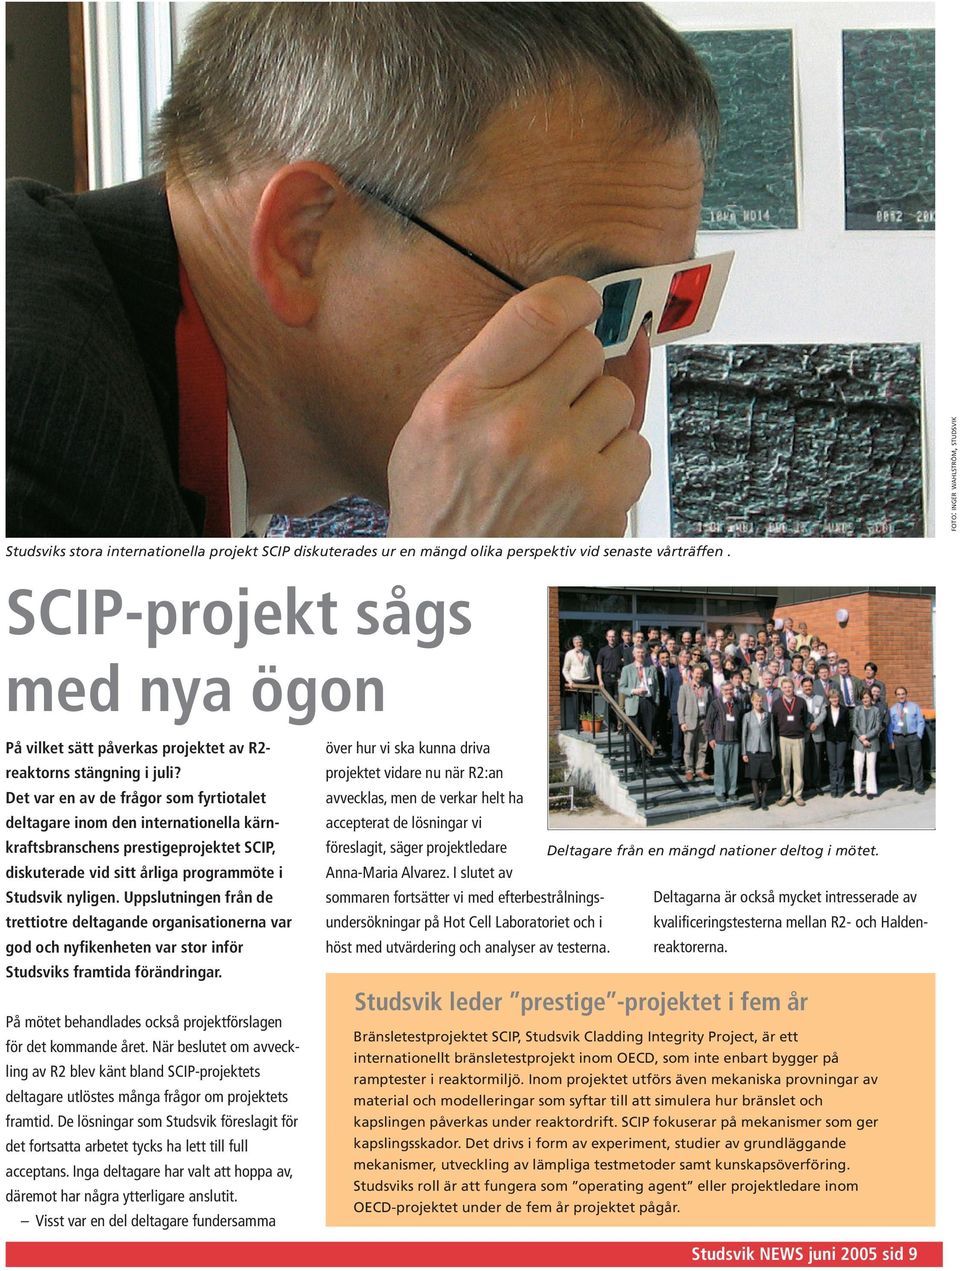 Det var en av de frågor som fyrtiotalet deltagare inom den internationella kärnkraftsbranschens prestigeprojektet SCIP, diskuterade vid sitt årliga programmöte i Studsvik nyligen.